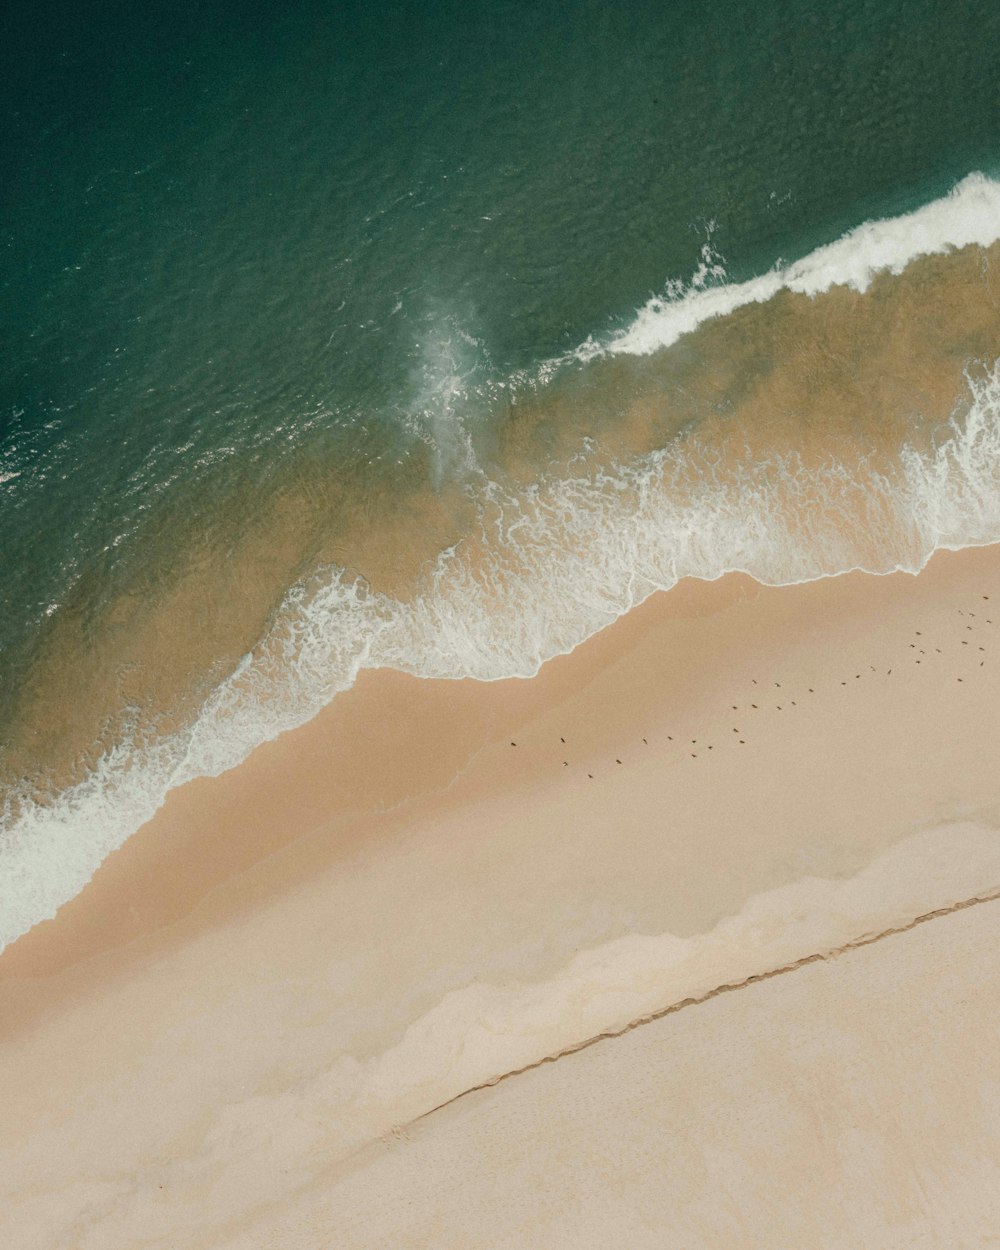 Vista aérea de uma praia com ondas